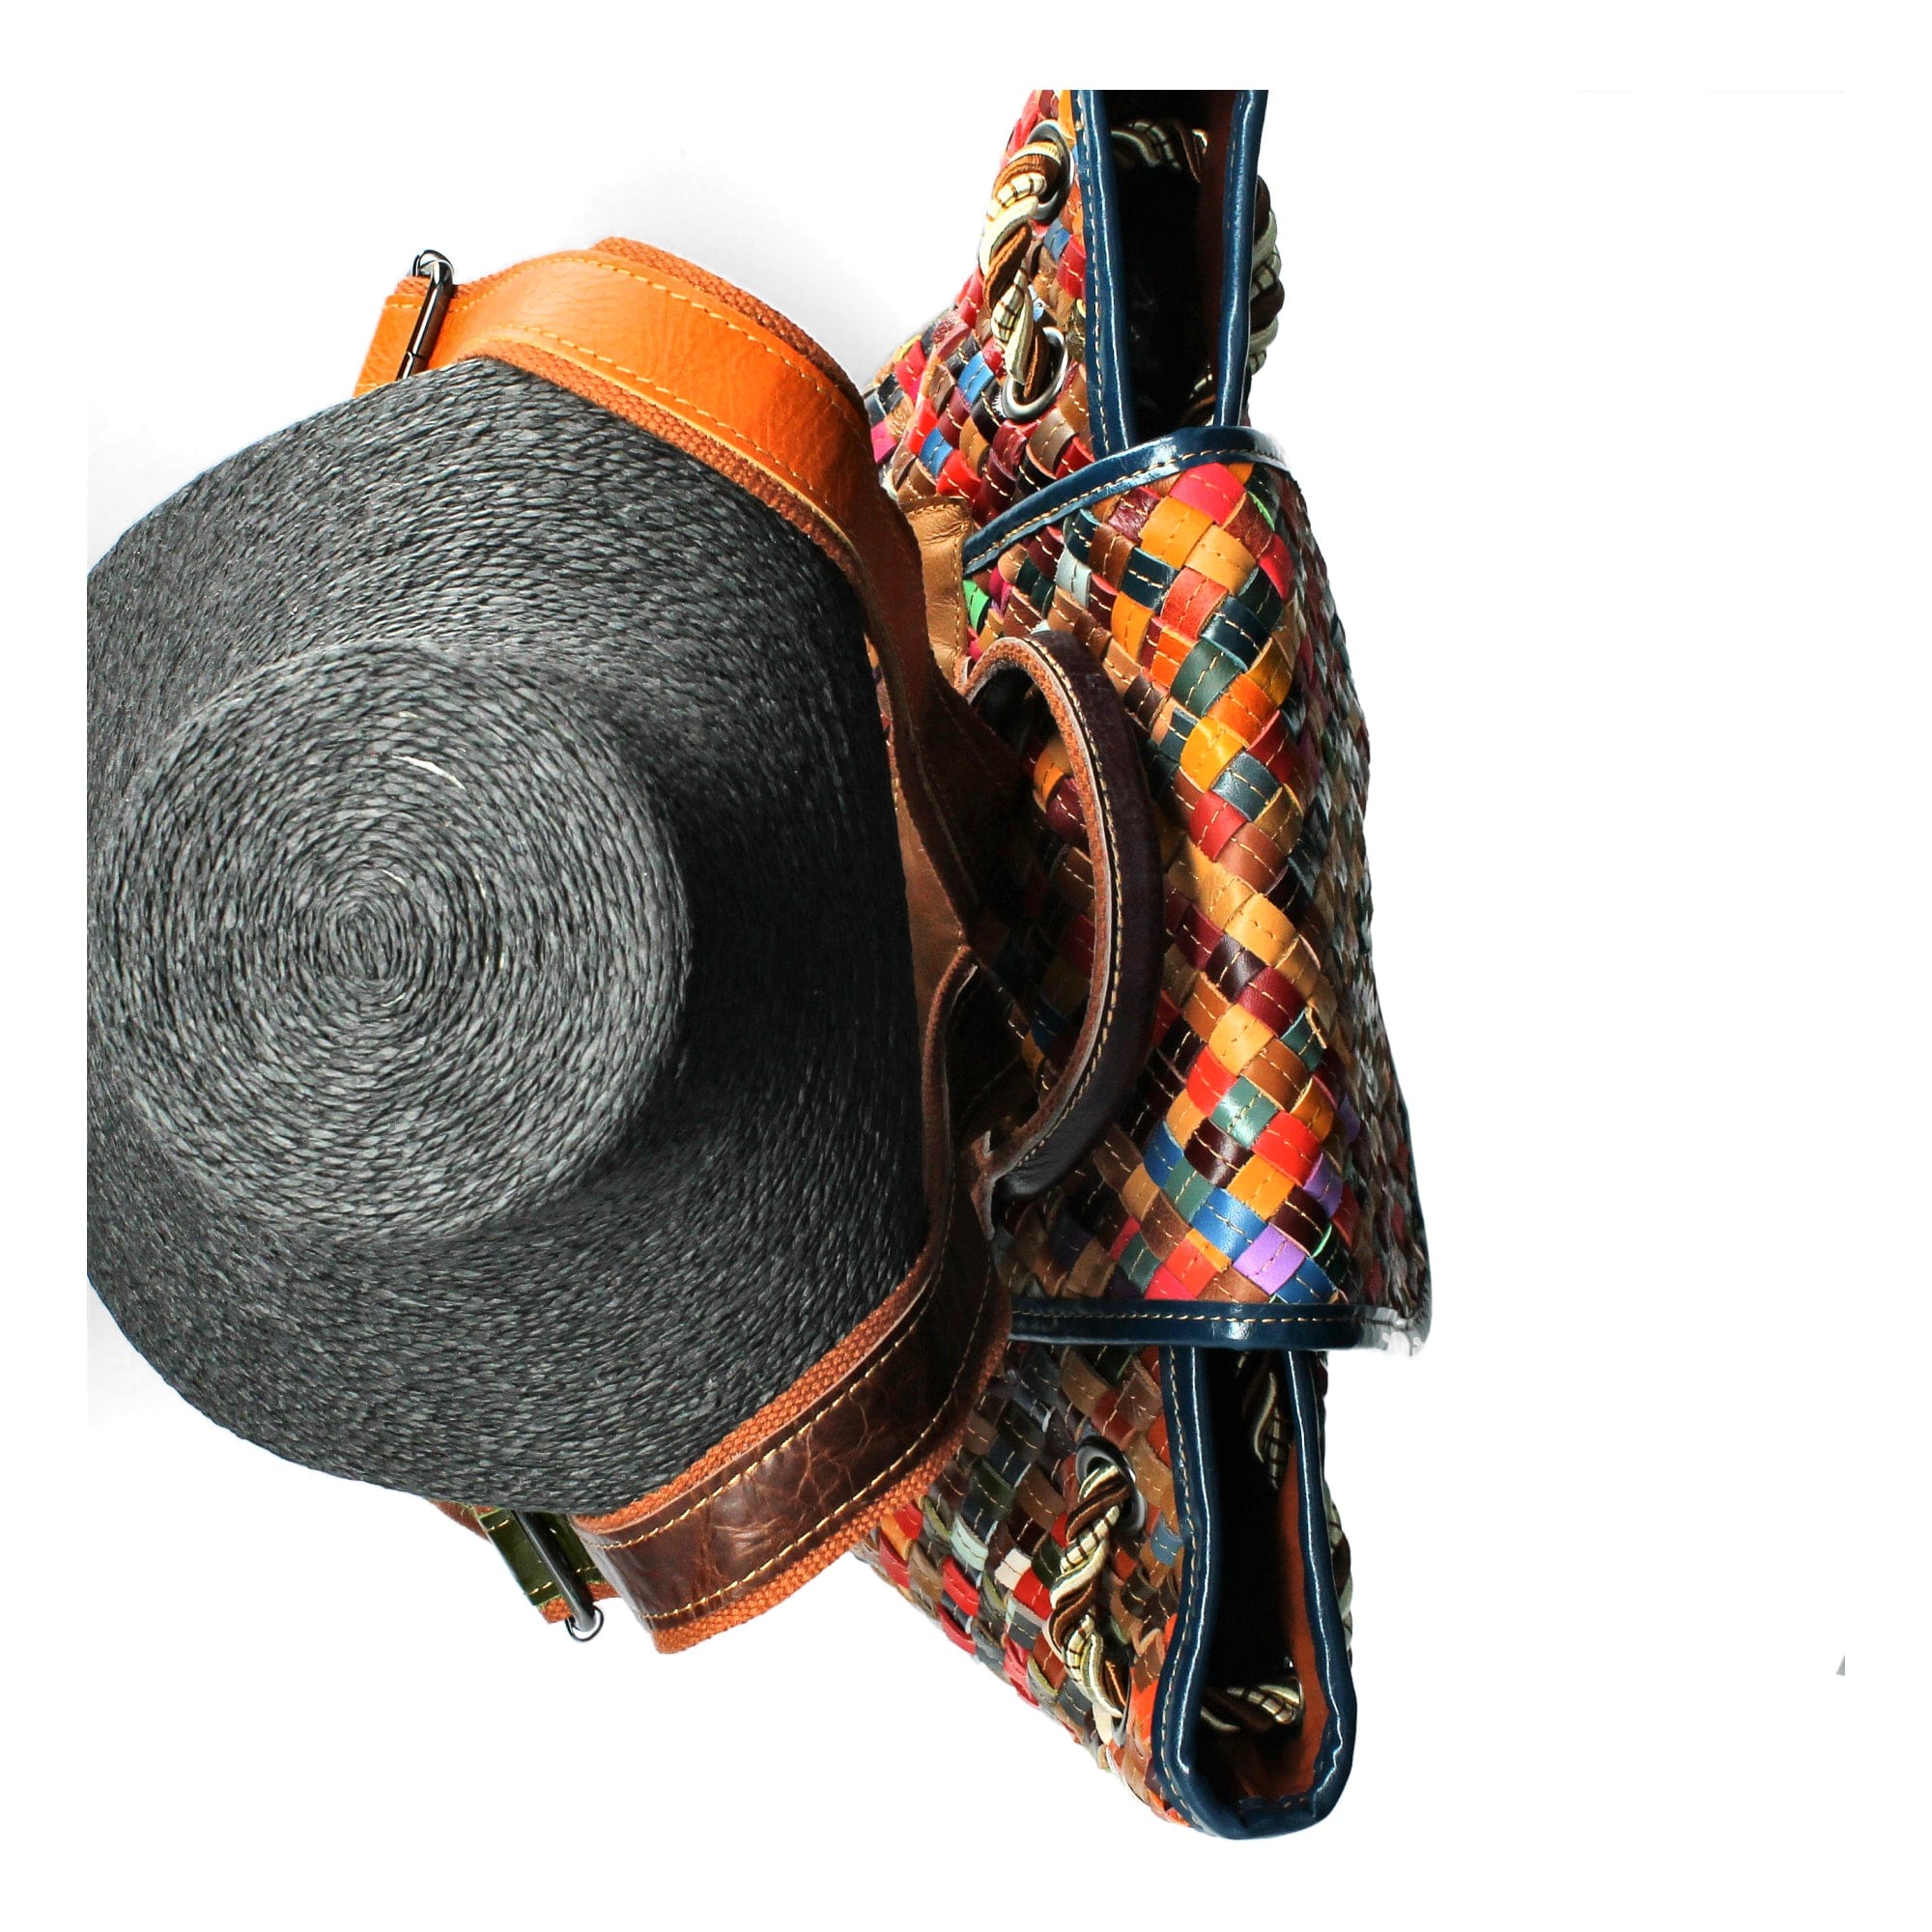 Odensa eksklusiv rygsæk i læder - taske